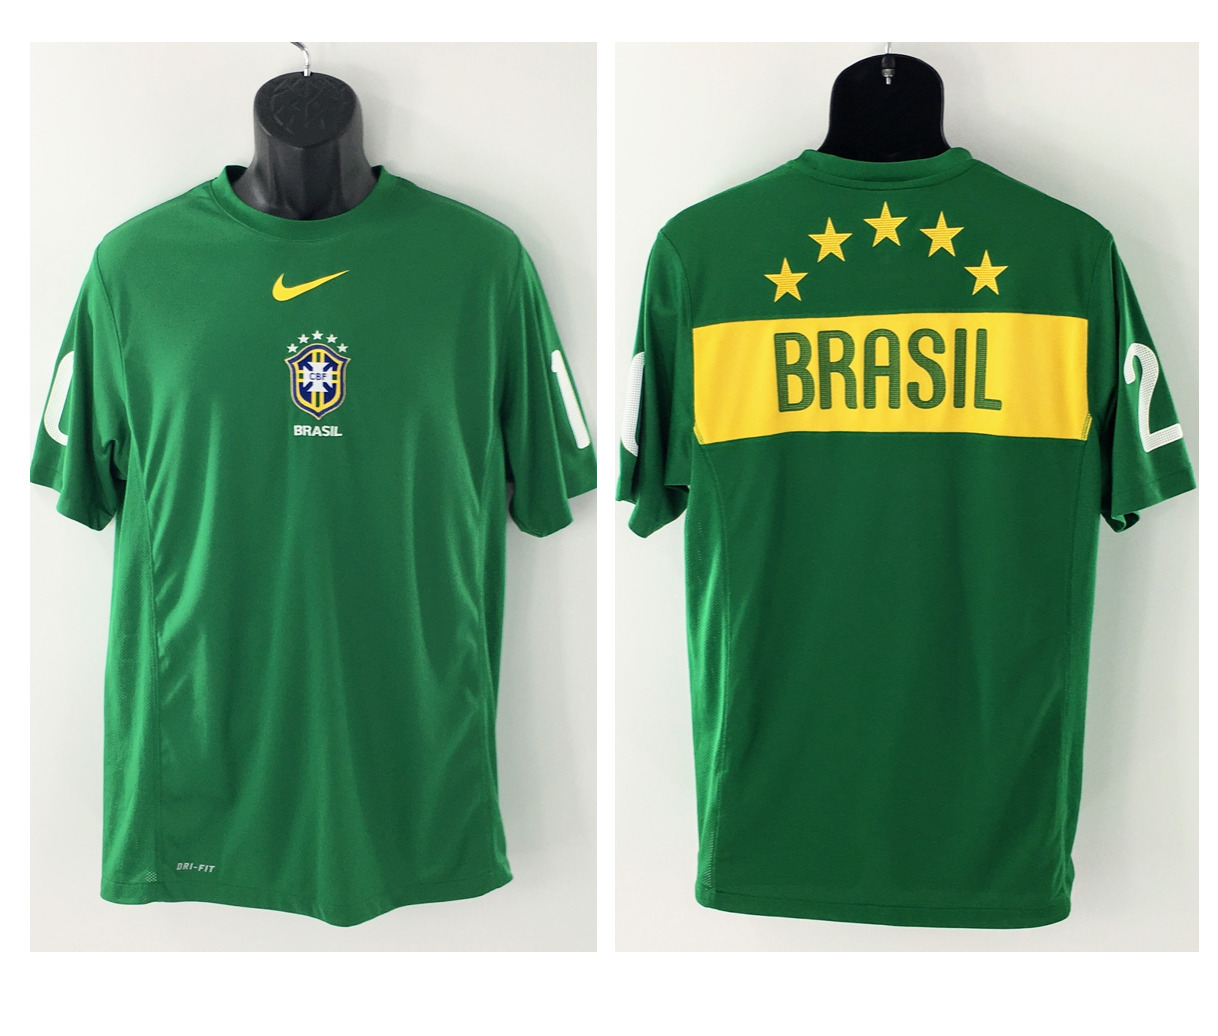 Brazil National Team Football Shirt Green Nike 2010 Soccer Dri Fit Sz L